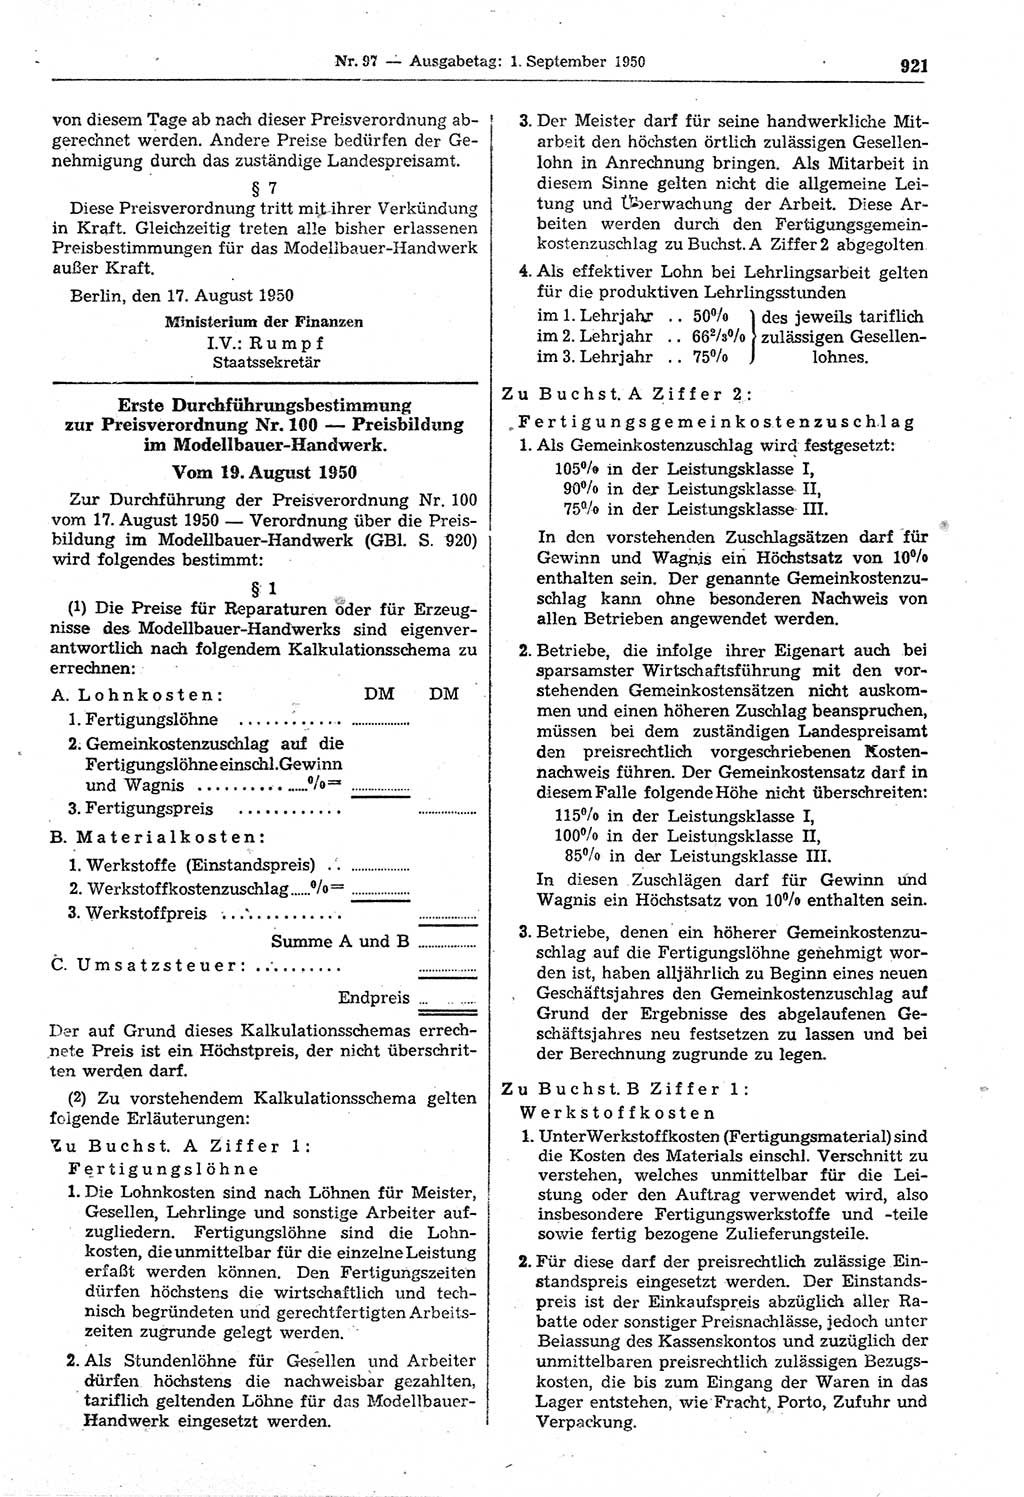 Gesetzblatt (GBl.) der Deutschen Demokratischen Republik (DDR) 1950, Seite 921 (GBl. DDR 1950, S. 921)